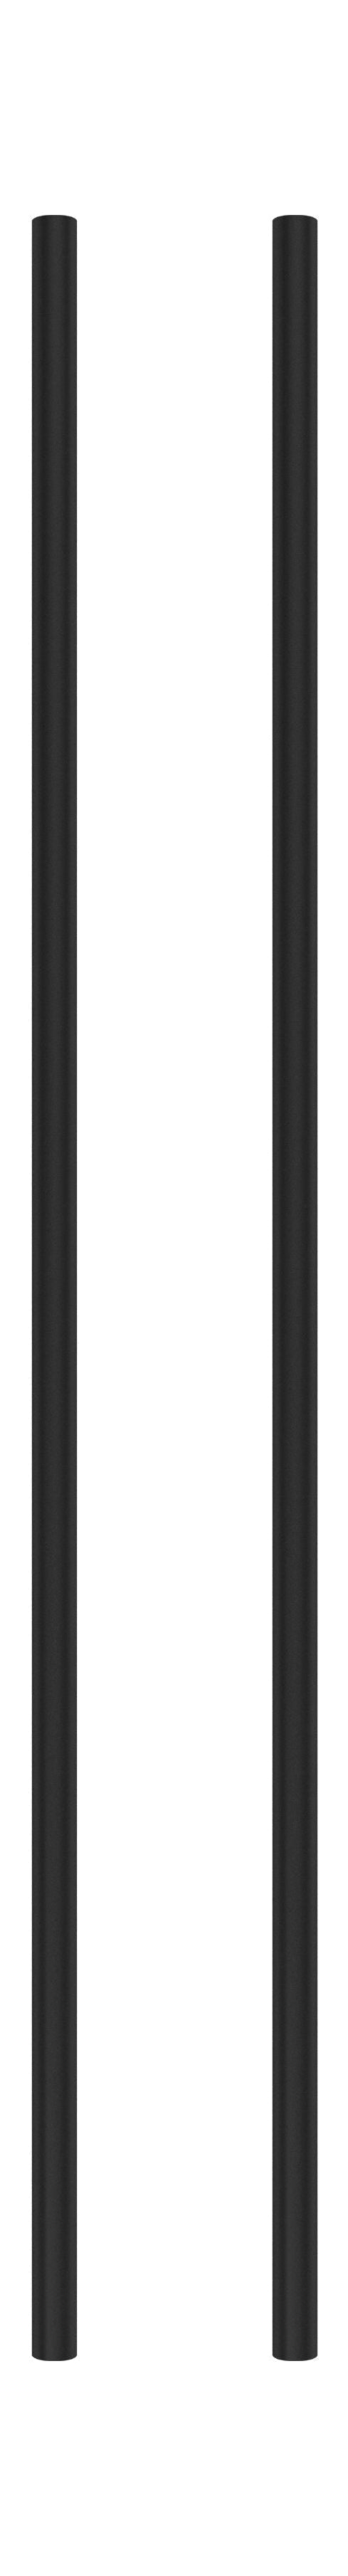 Moebe -Regalsystem/Wandregalbein 85 cm Schwarz, 2 Set von 2